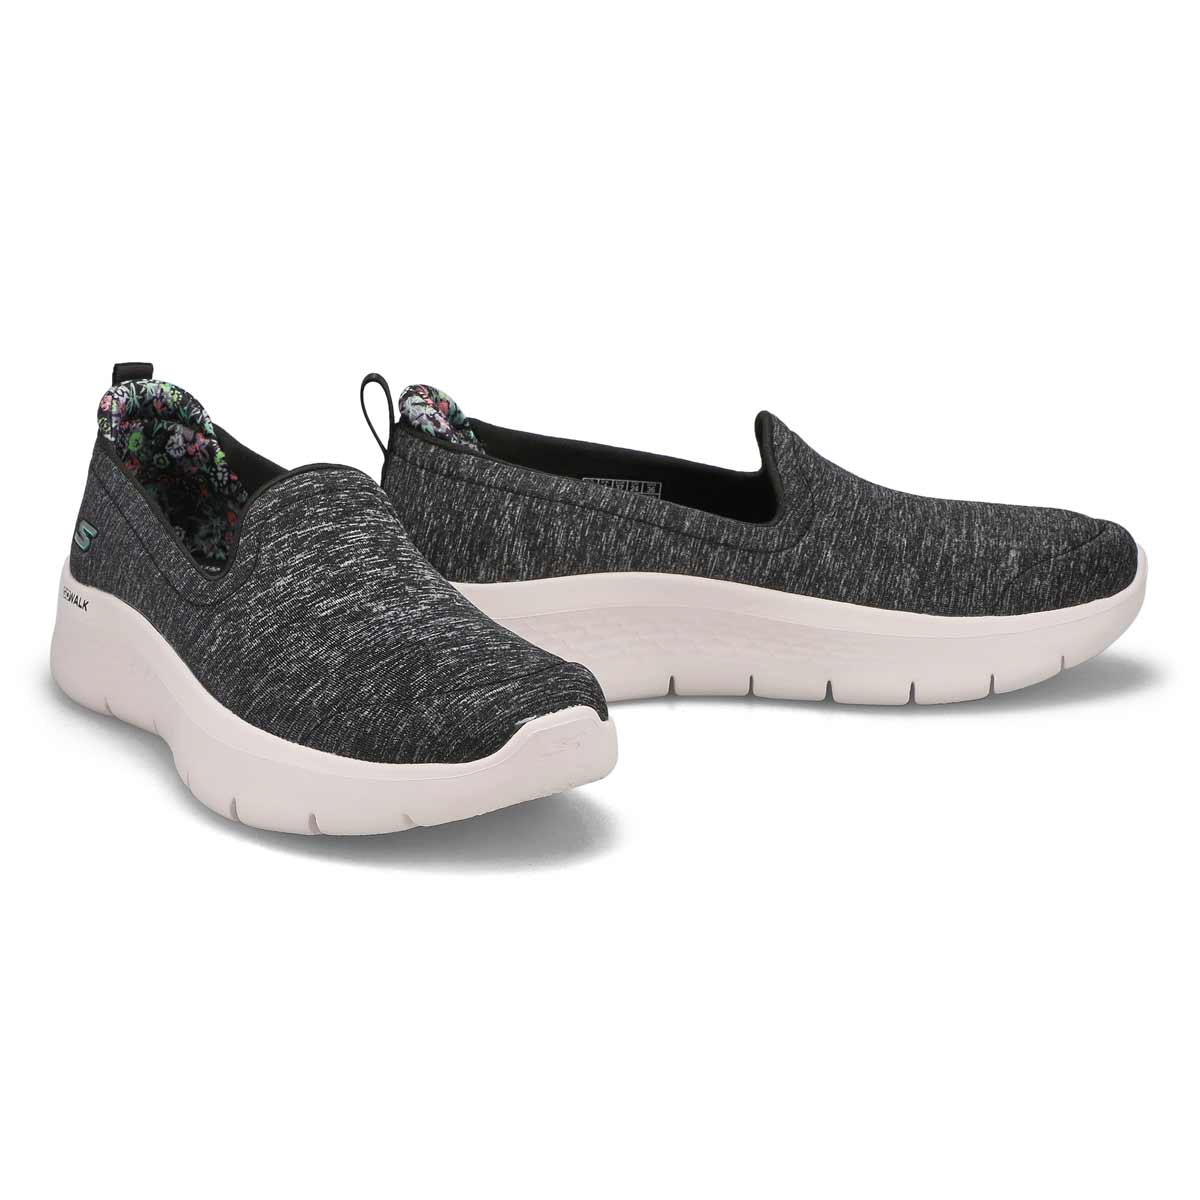 Women's Go Walk Flex Slip On Sneaker - Black/White